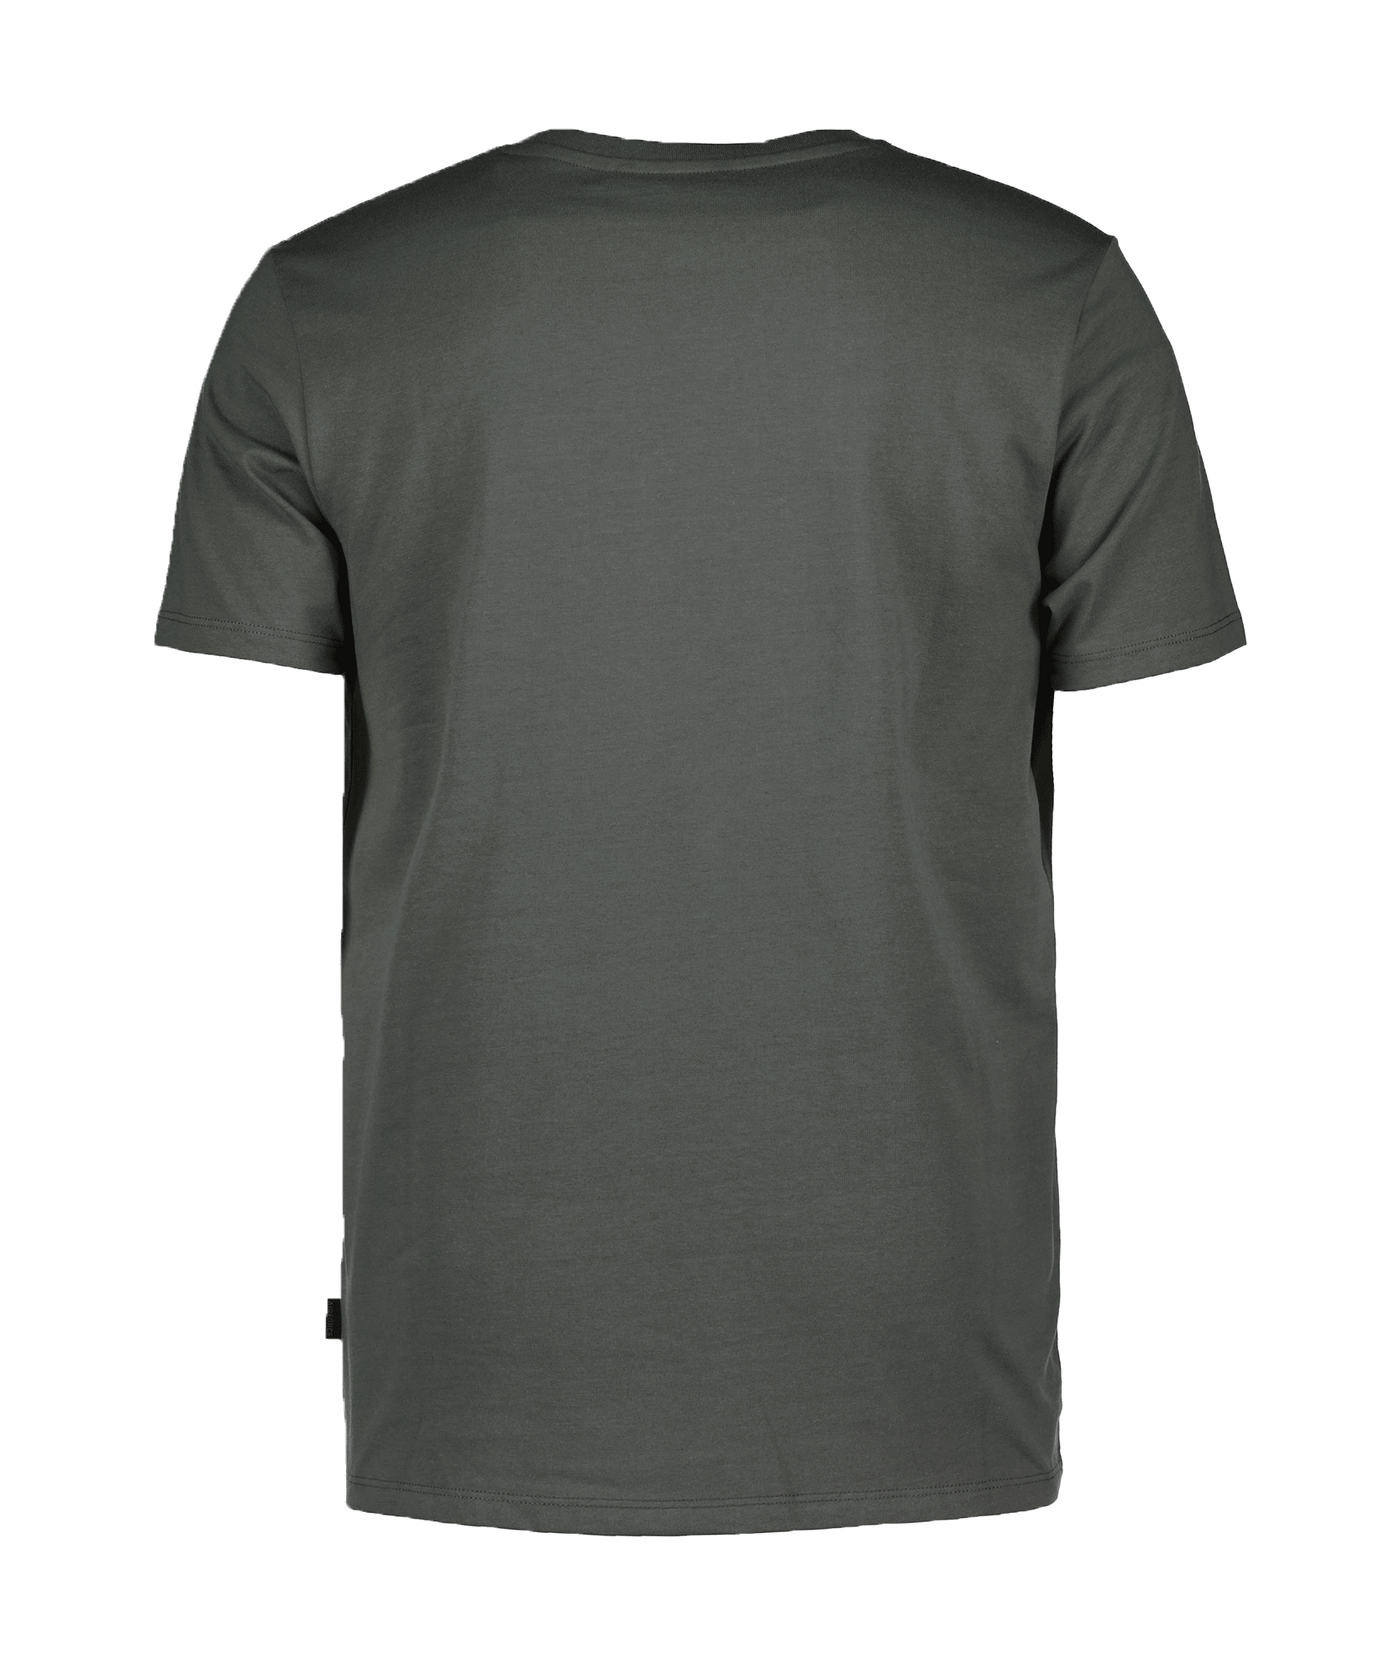 Airforce - Tbm0888 - Basic T-shirt -  970/901 Gun Metal